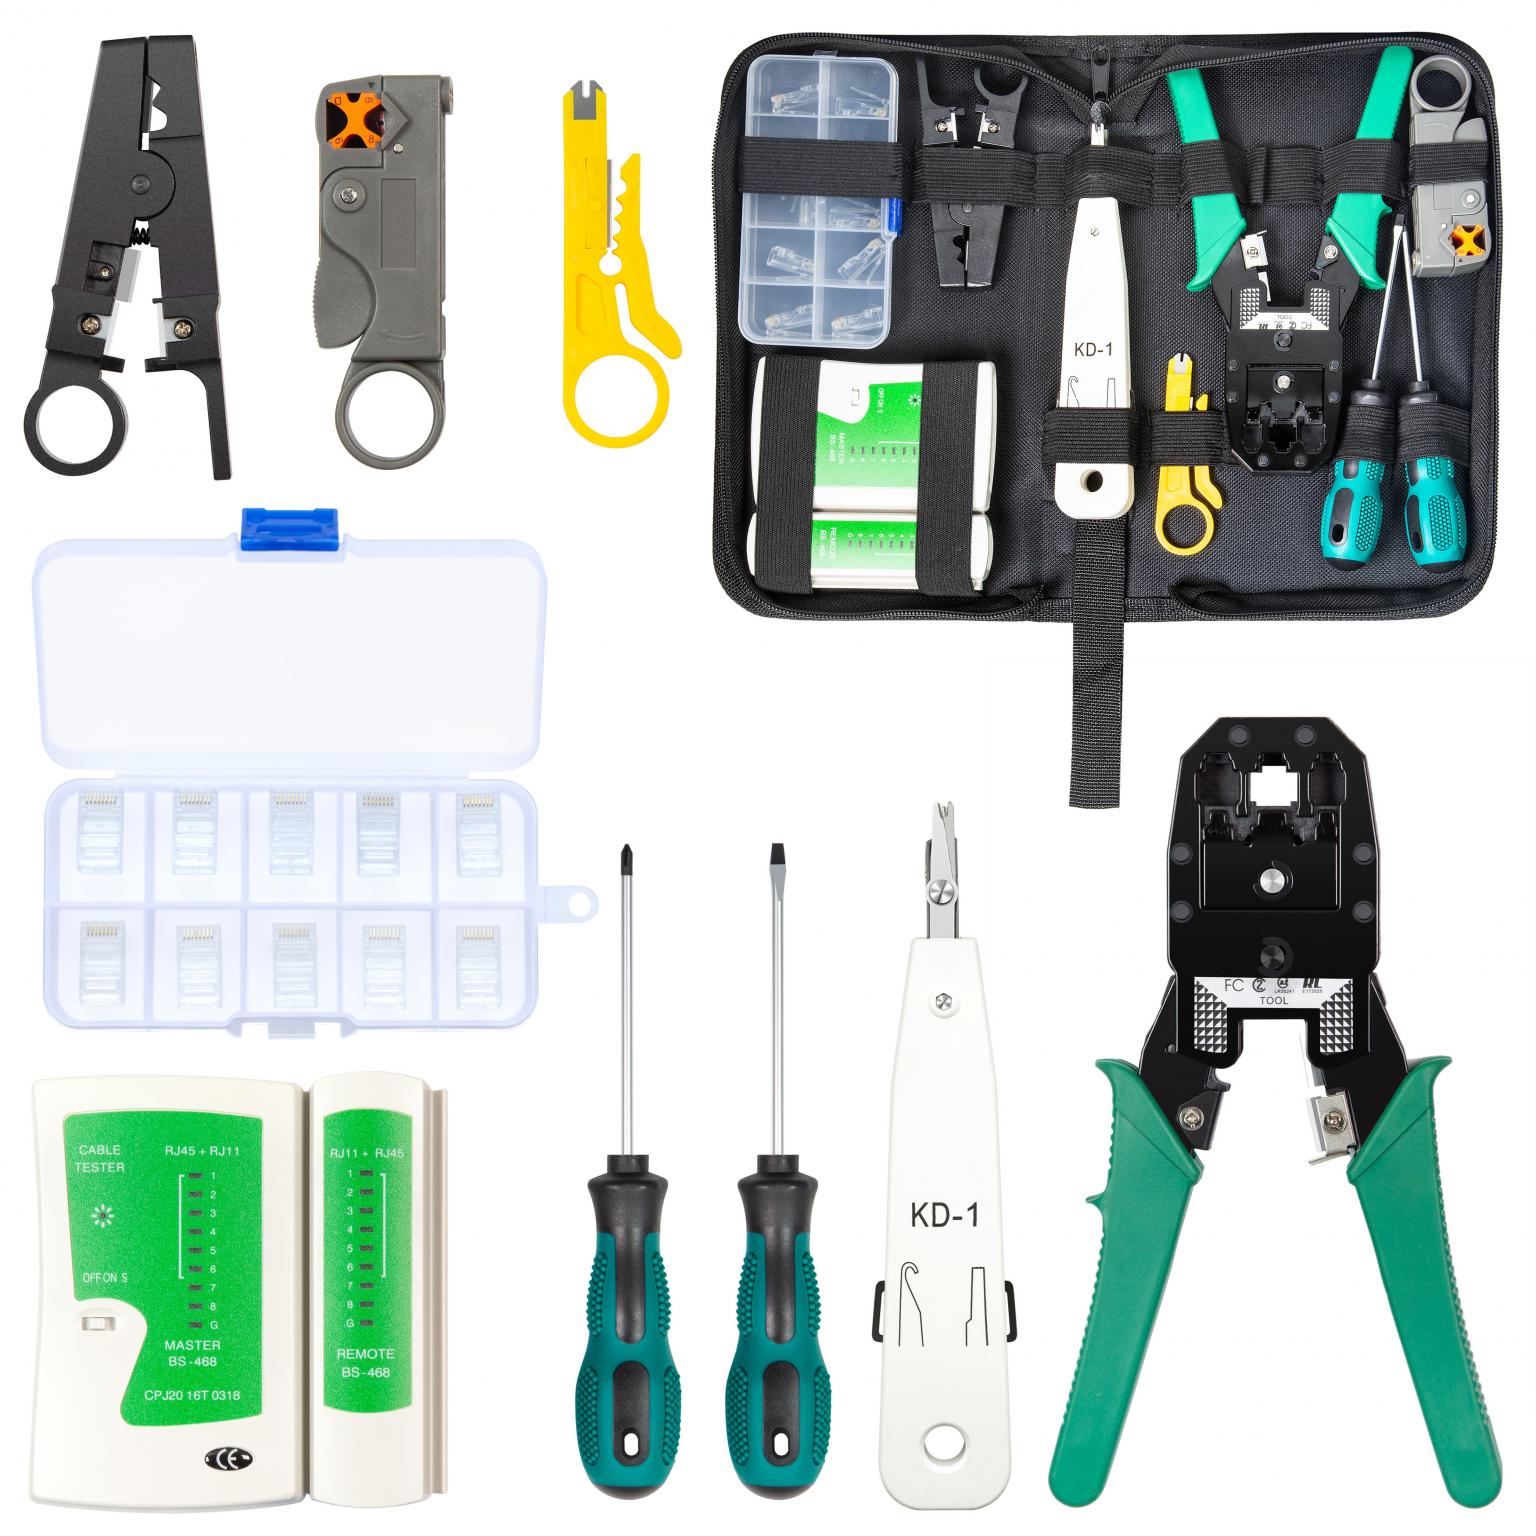 Kit d'outils de sertissage Rj45, outil de serrage avec connecteurs